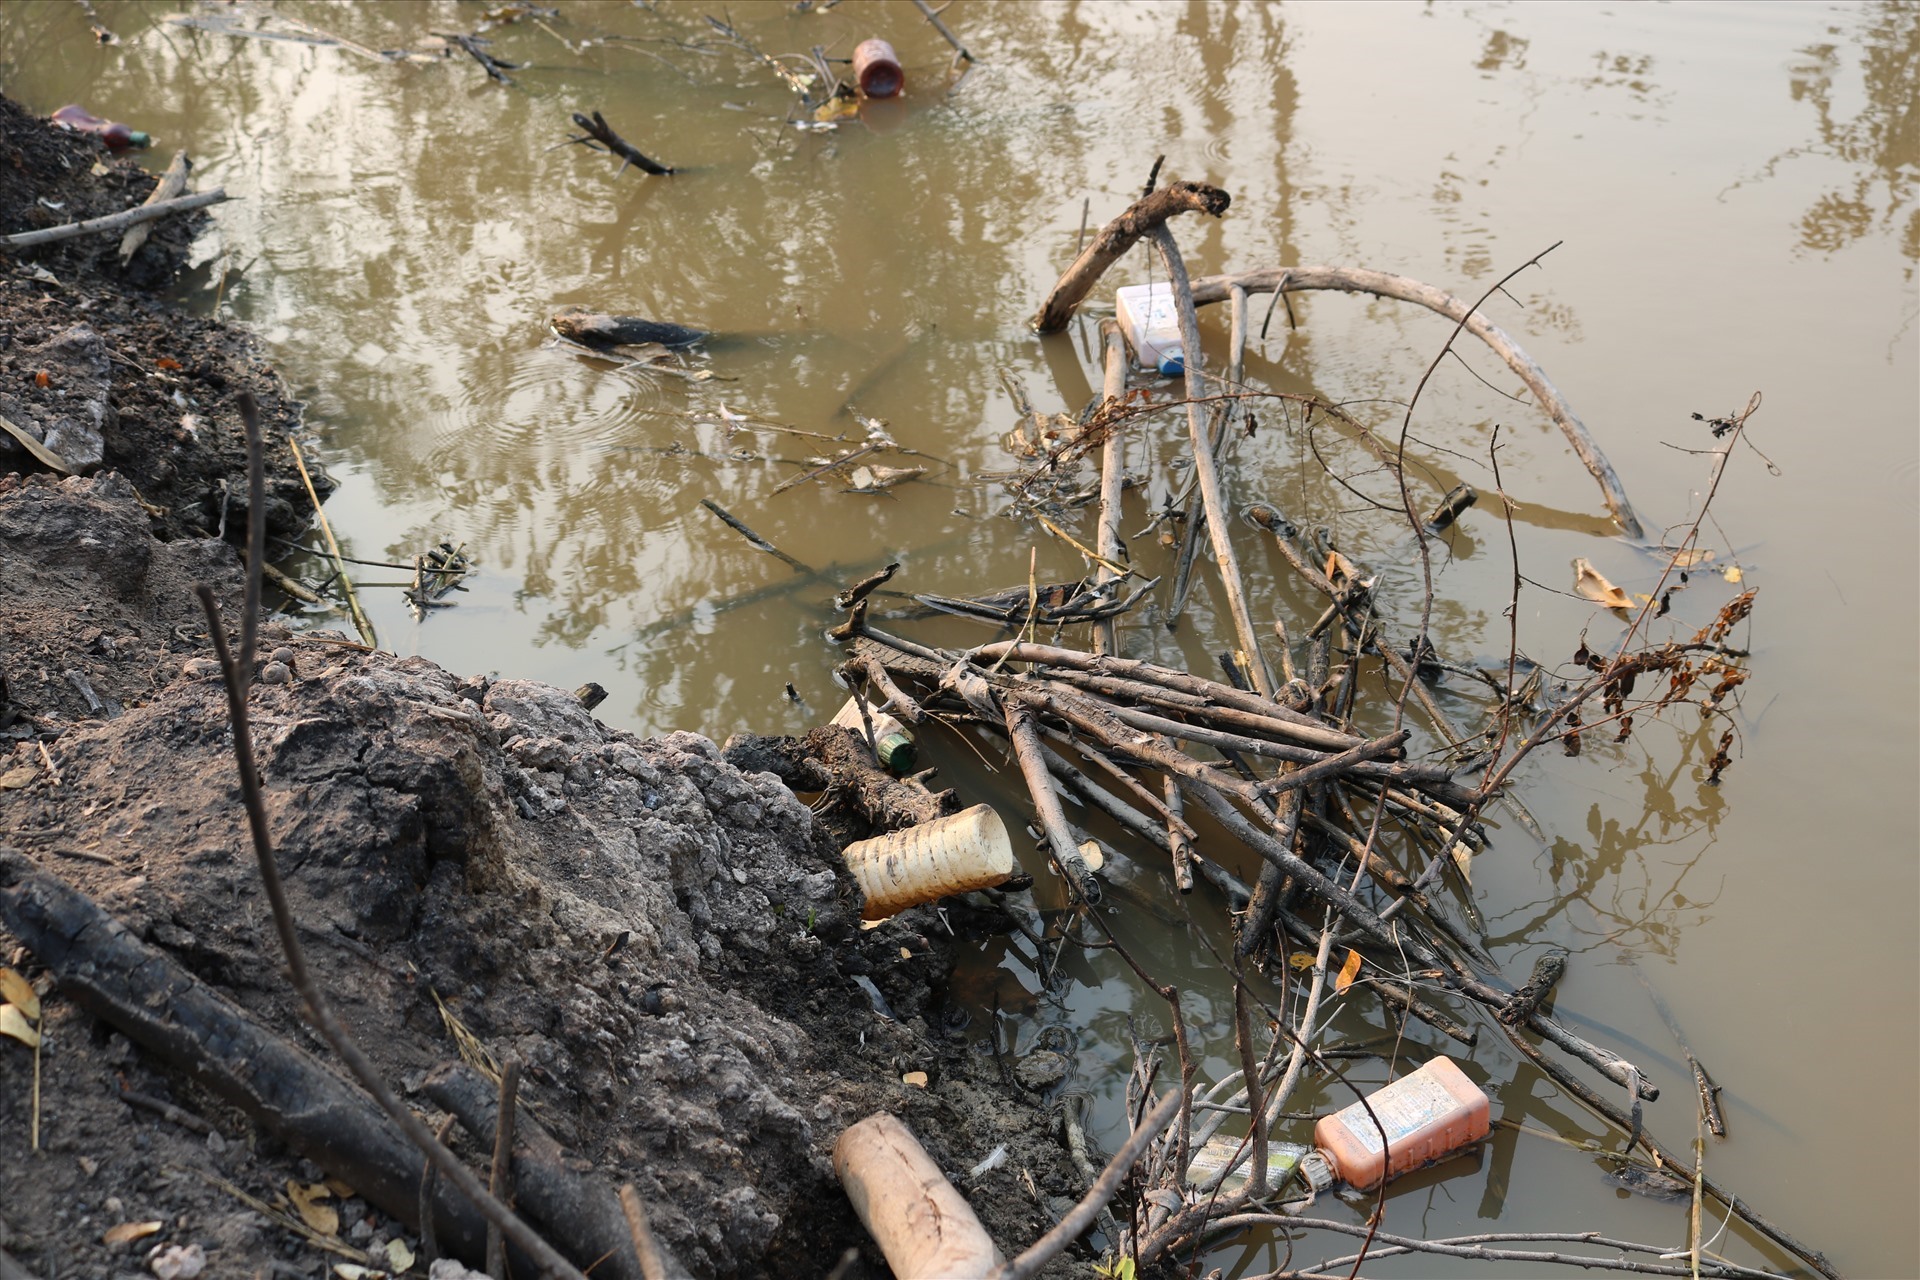 Vỏ chai thuốc bảo vệ thực vật nổi trên mặt nước sau khi thùng rác bị đẩy xuống kênh. Ảnh: LN